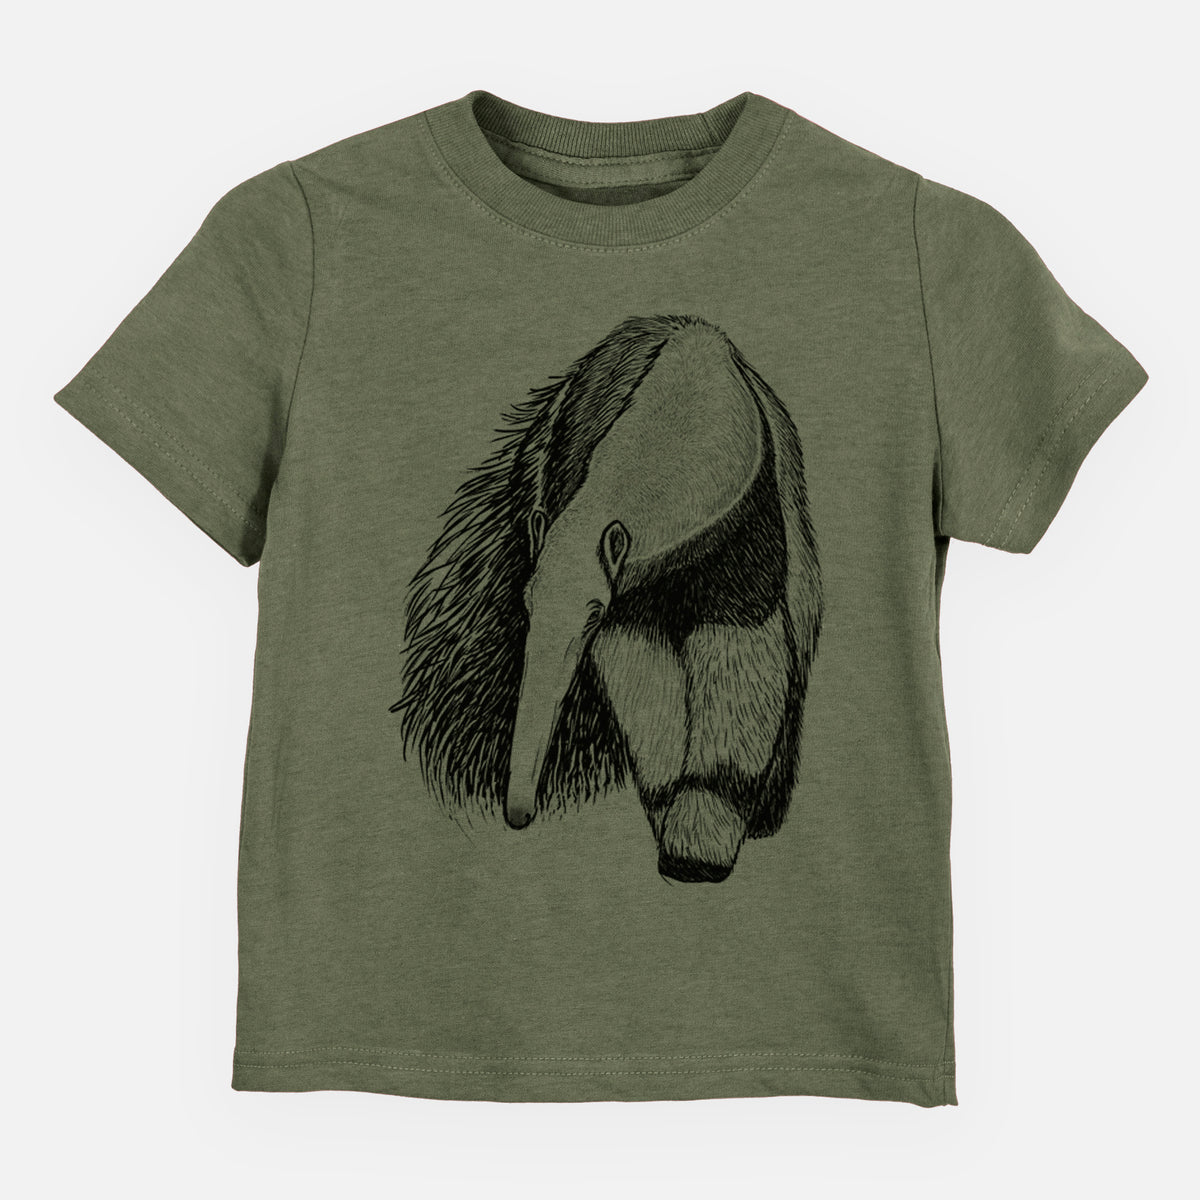 Giant Anteater - Myrmecophaga tridactyla - Kids Shirt